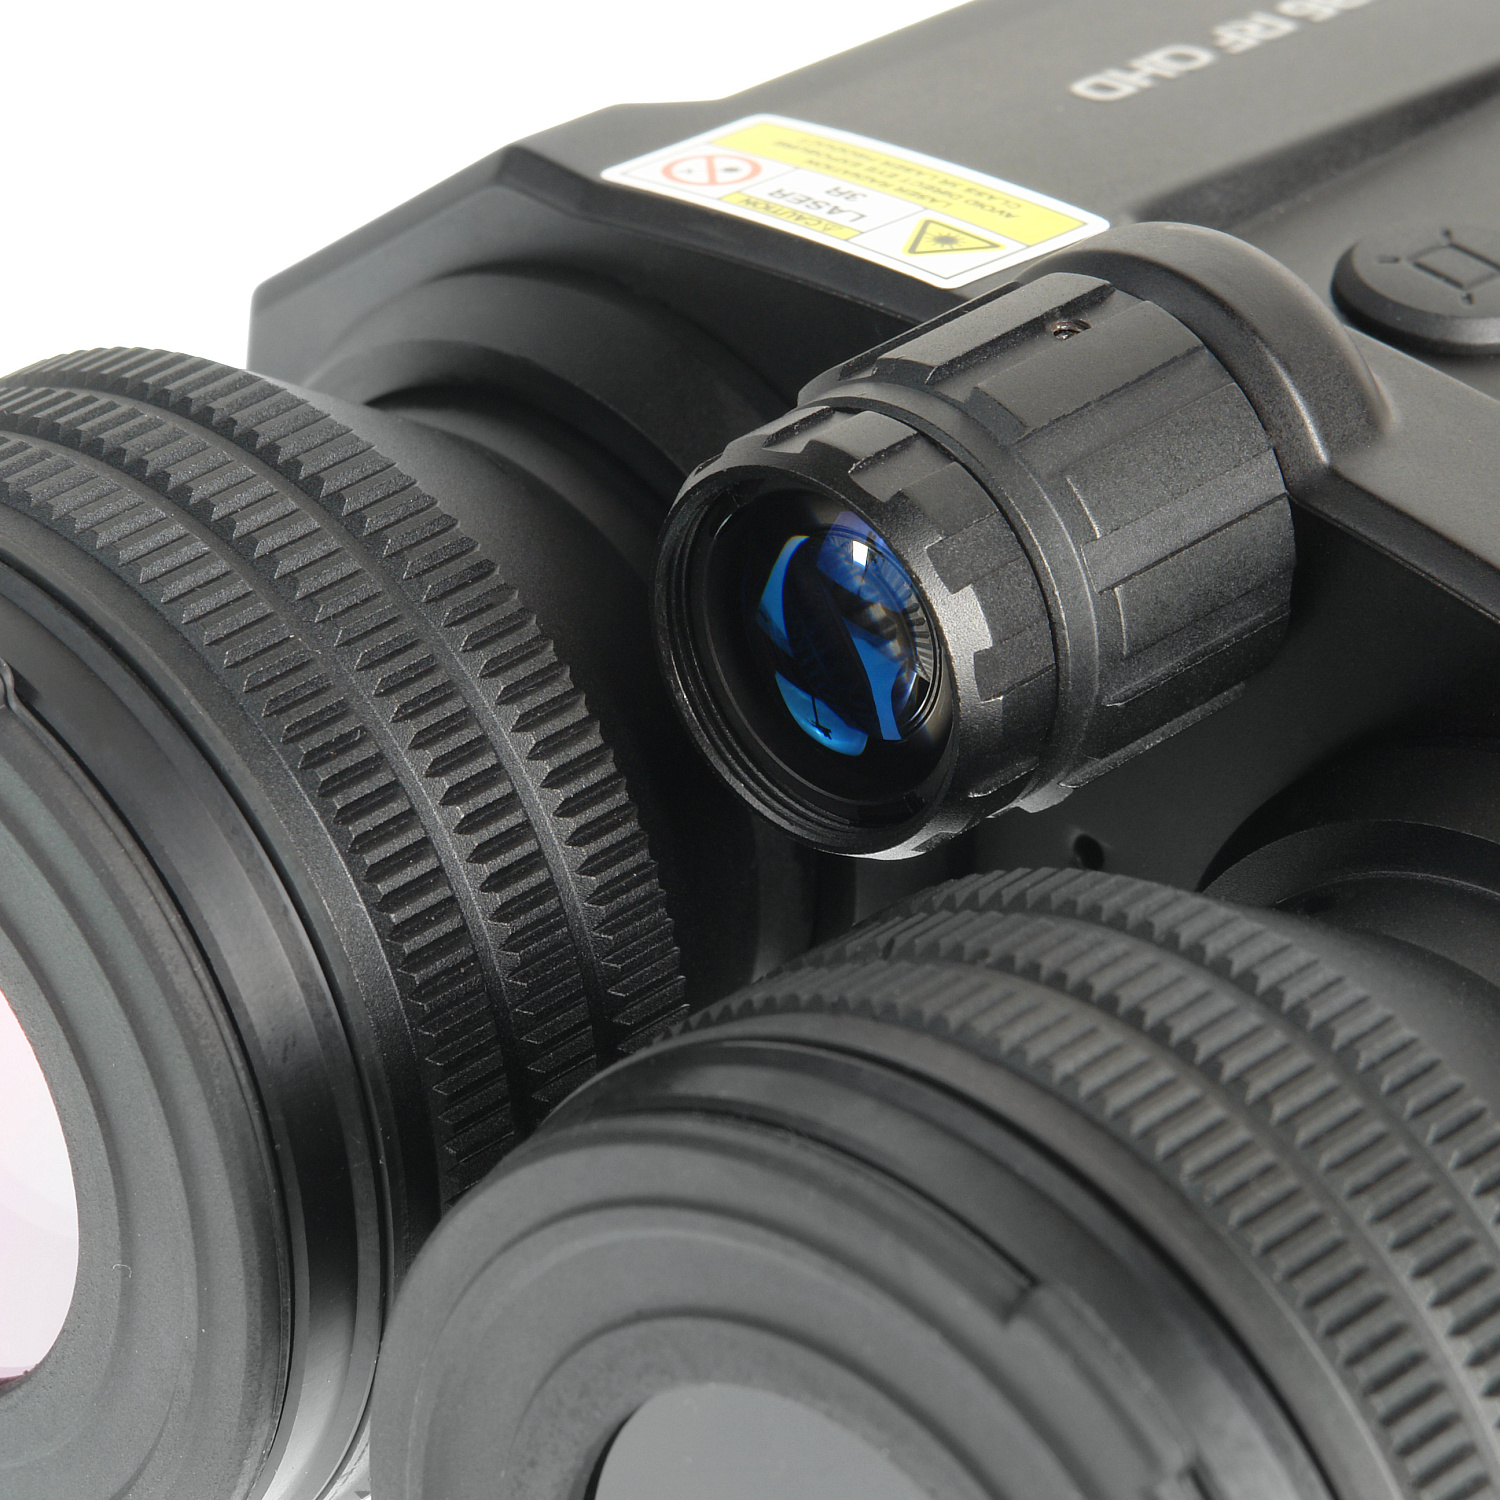 Бинокль ночного видения с дальномером Veber NVB 036 RF QHD цифровой